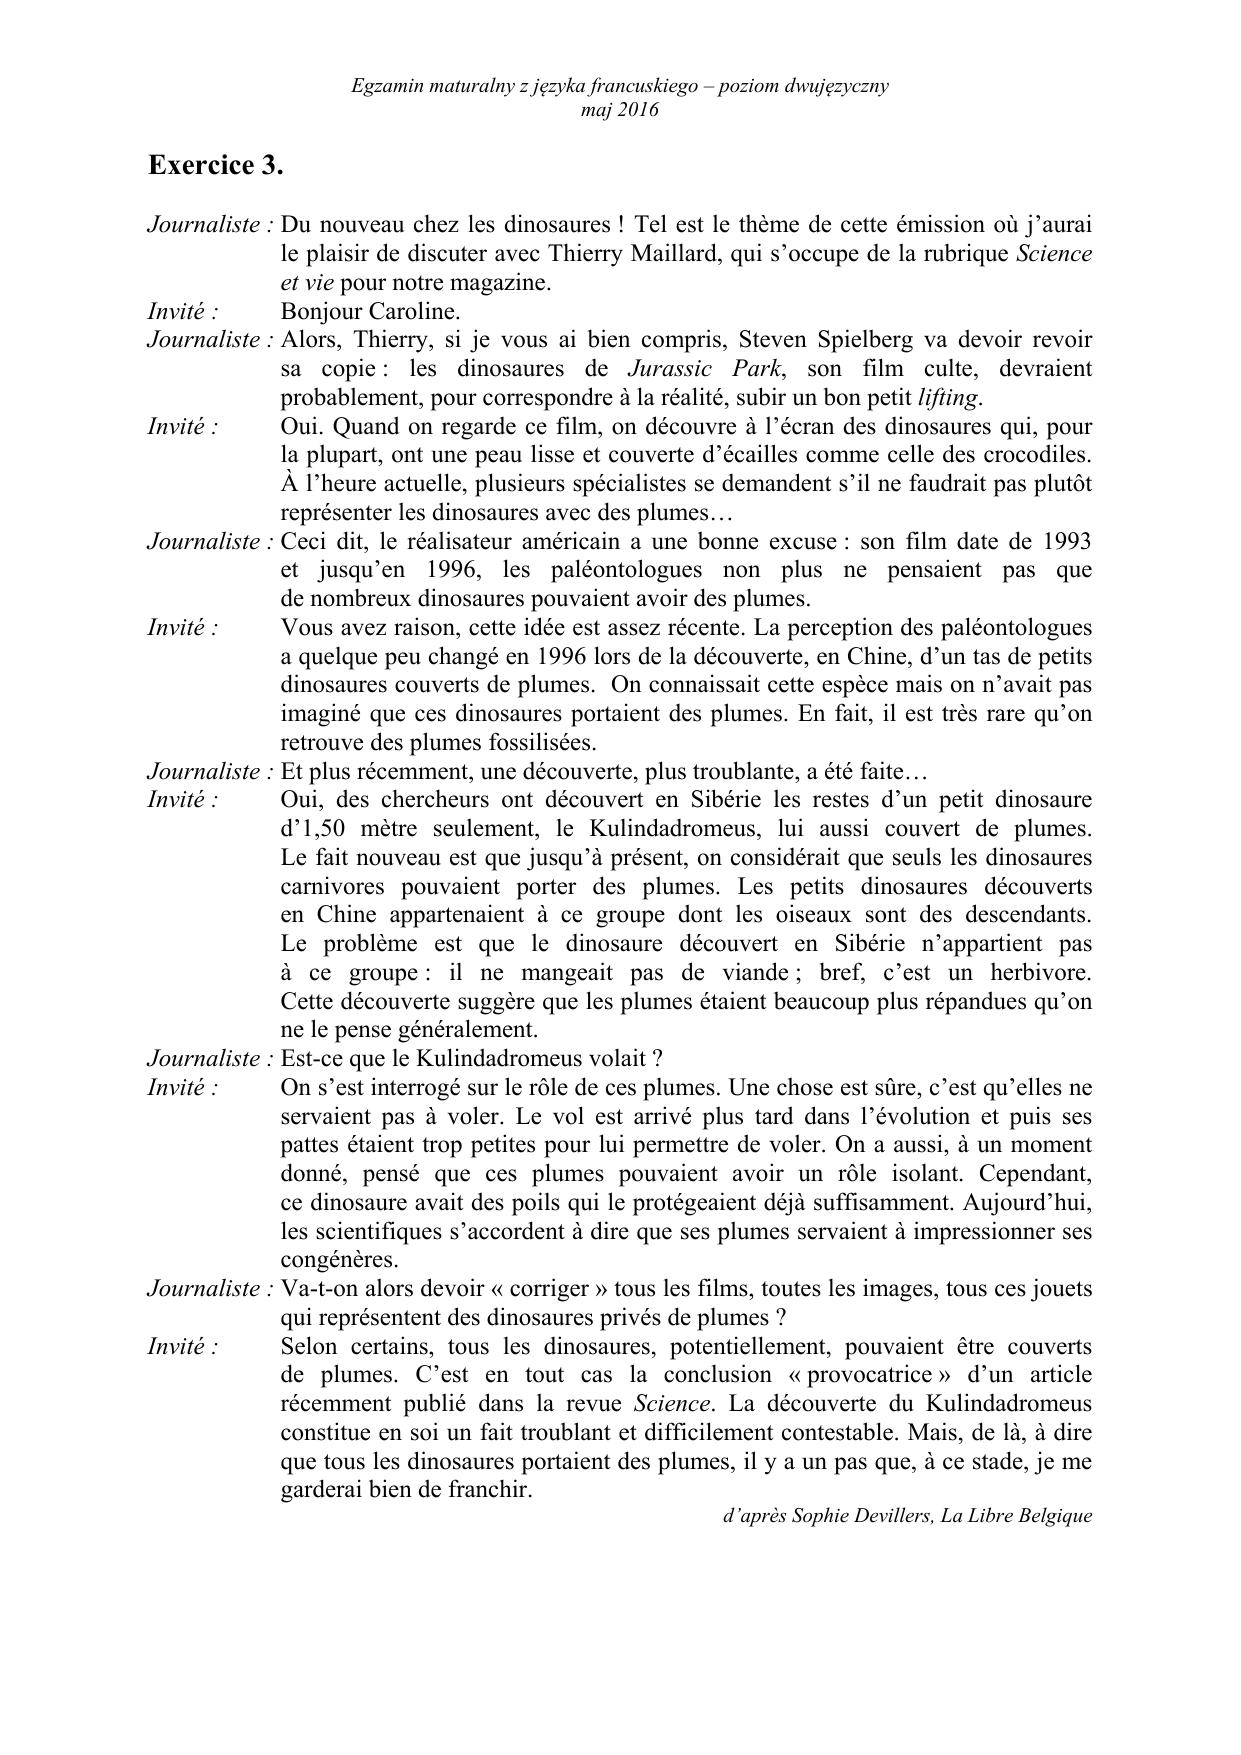 francuski-matura-2016-p-dwujezyczny-transkrypcja-4